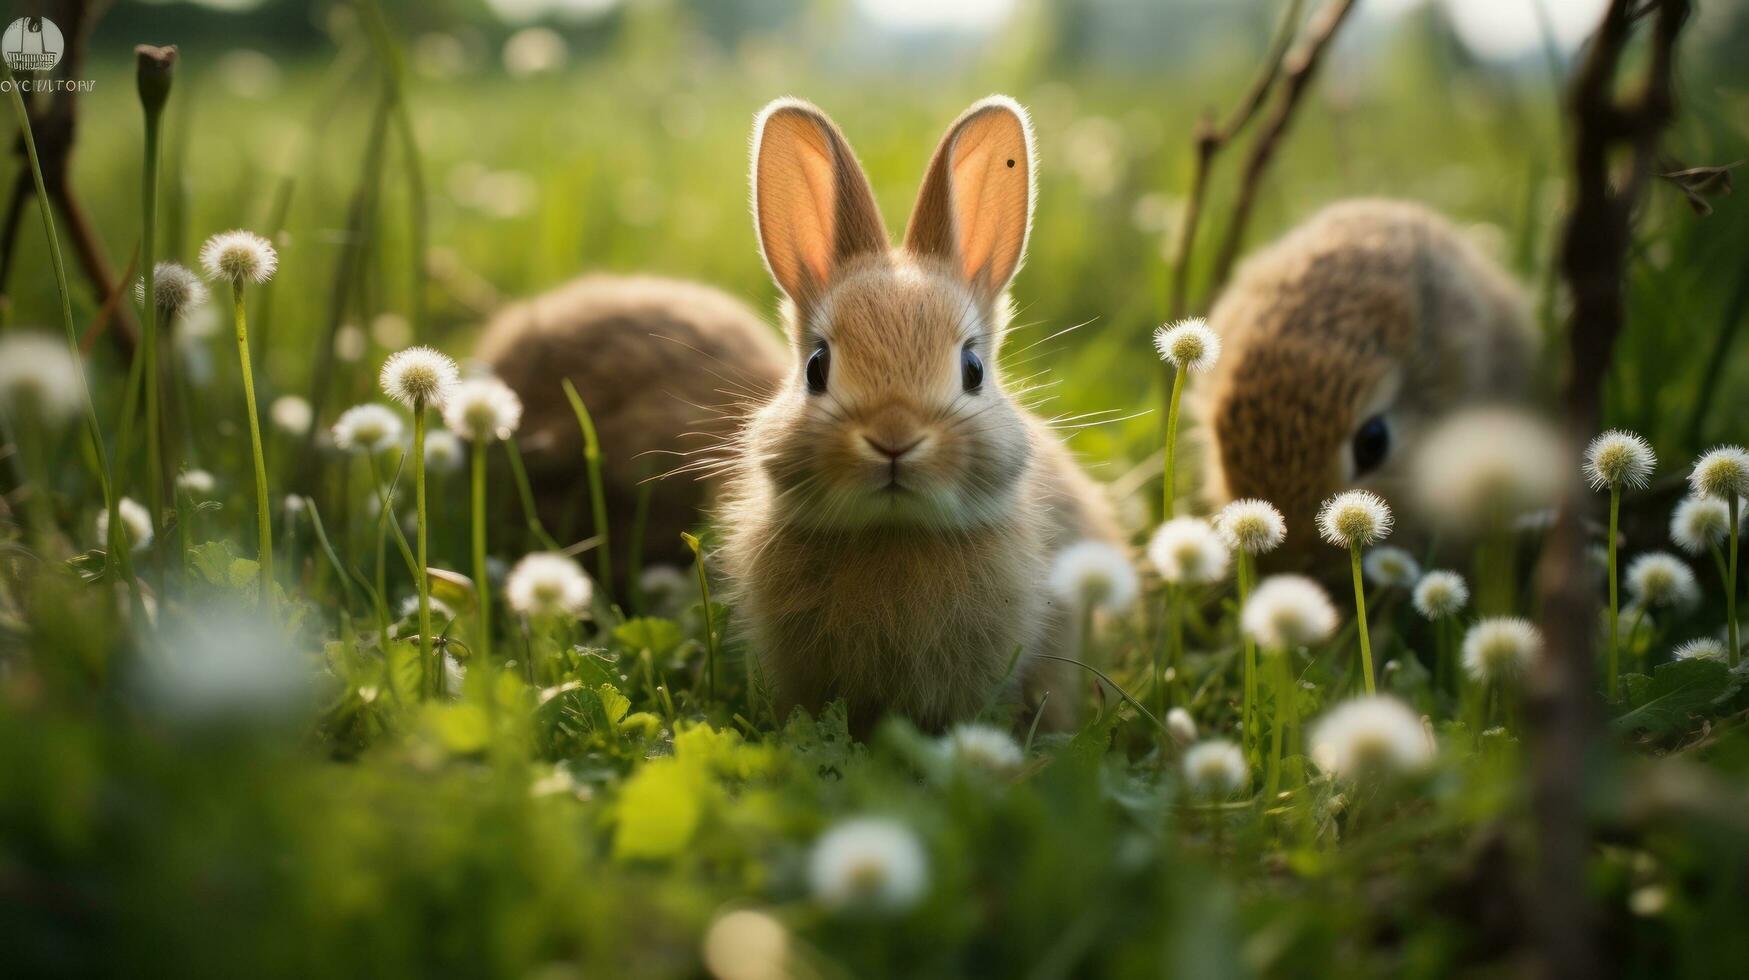 een konijn is aan het liegen in een weelderig weide omringd door groen gras, met wit eieren verspreide in de omgeving van foto